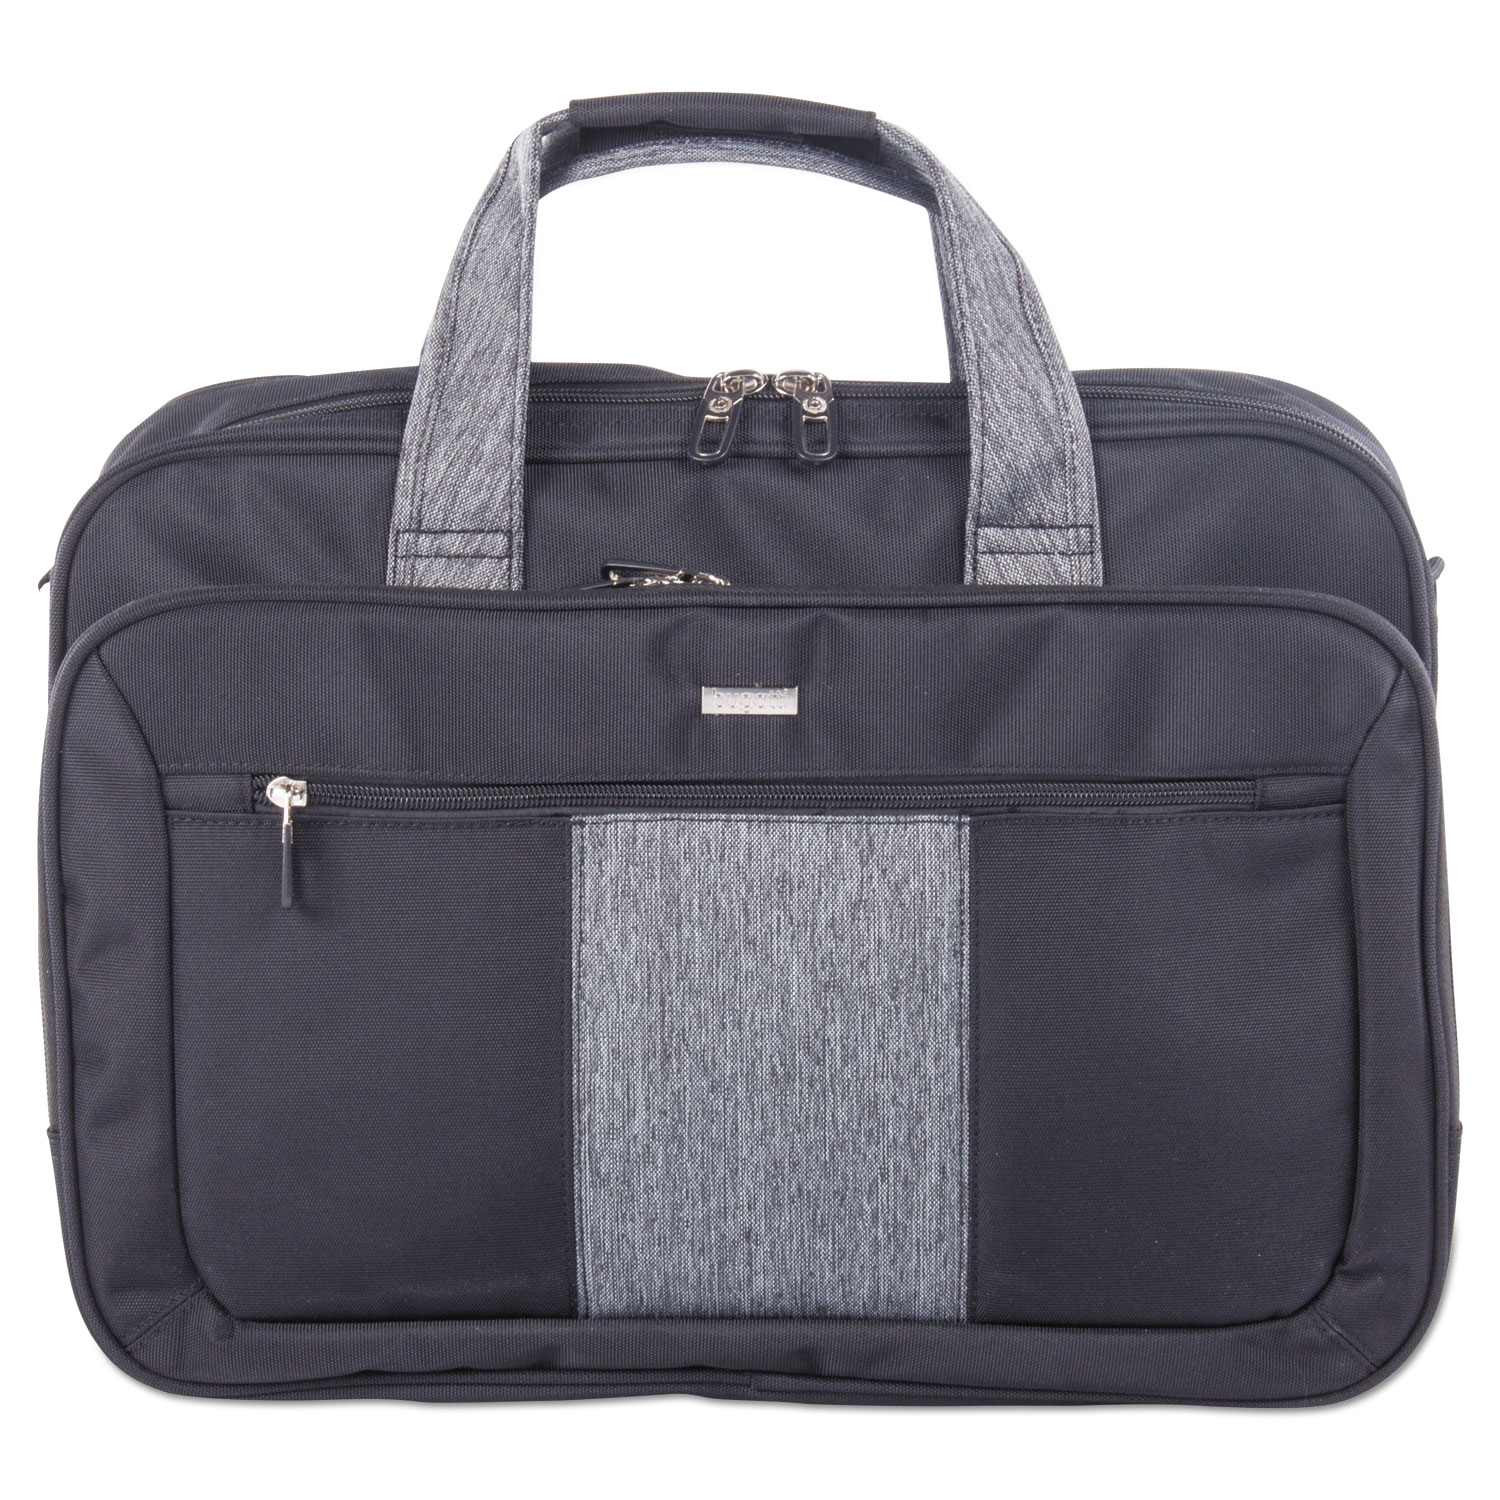 Matt Executive Briefcase, 17 x 5.5 x 12.75, Polyester, Black/Gray